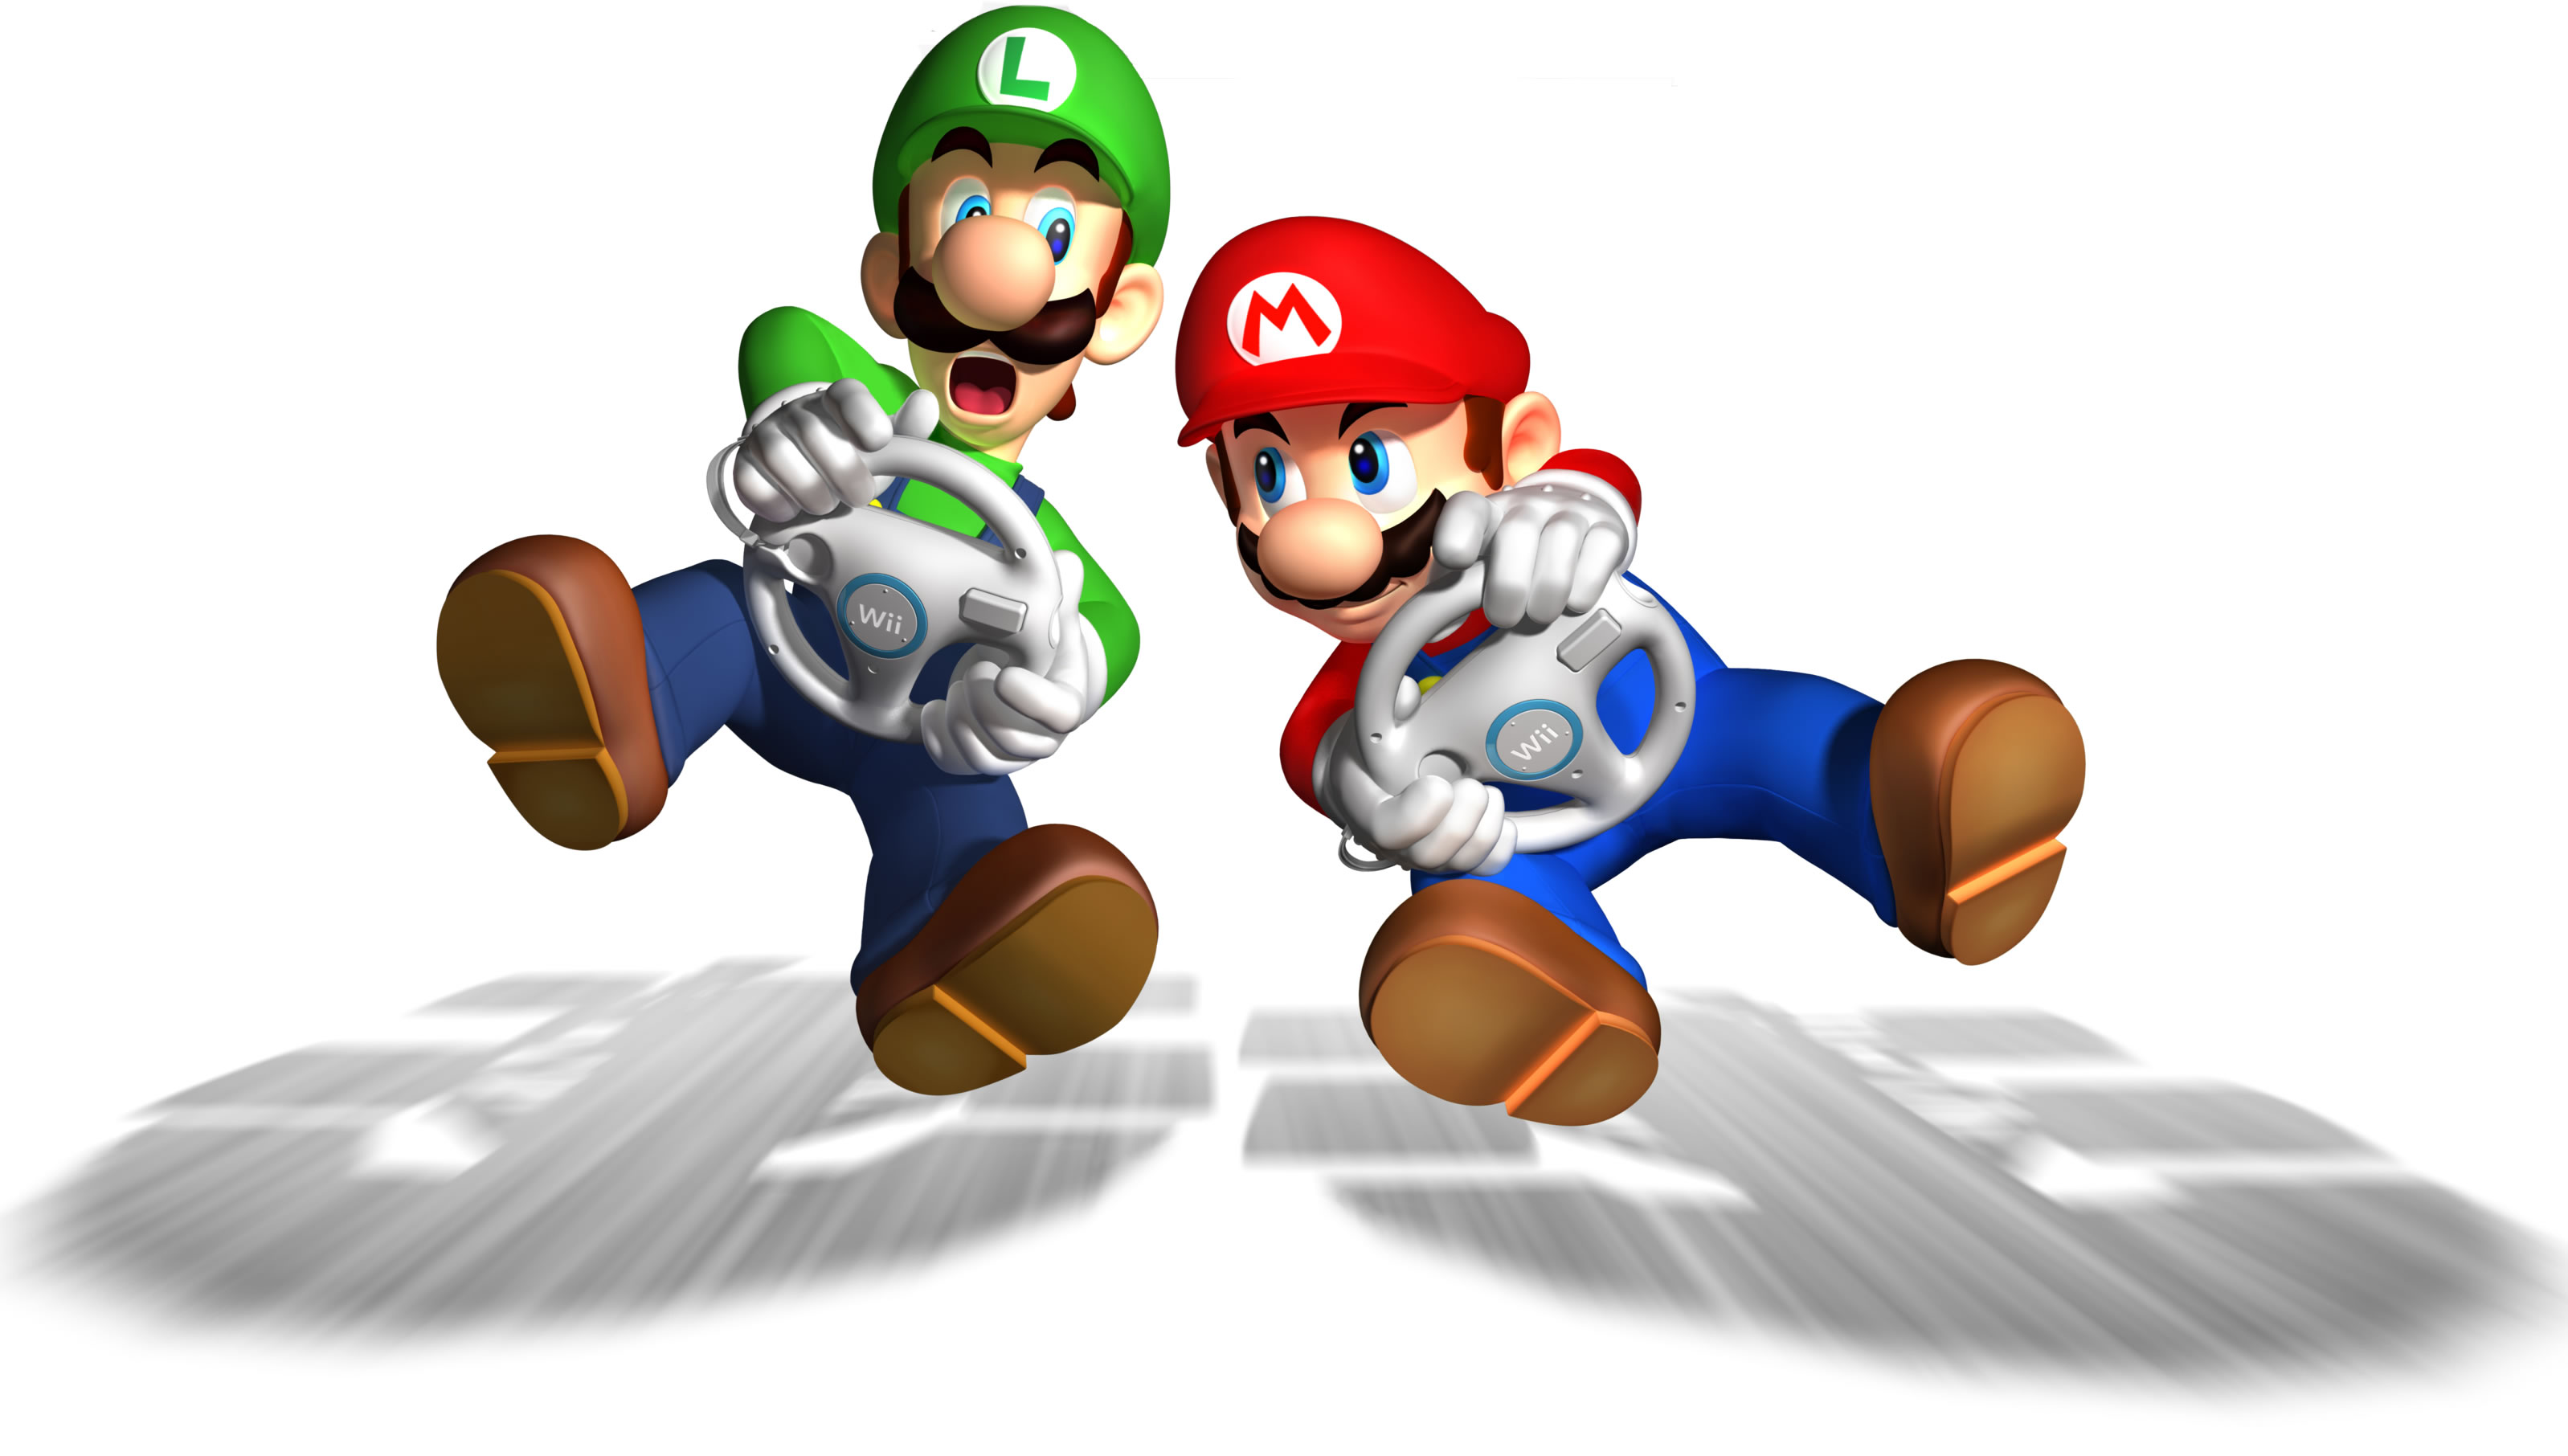 Carro de corrida Luigi Nintendo Mario Kart 8